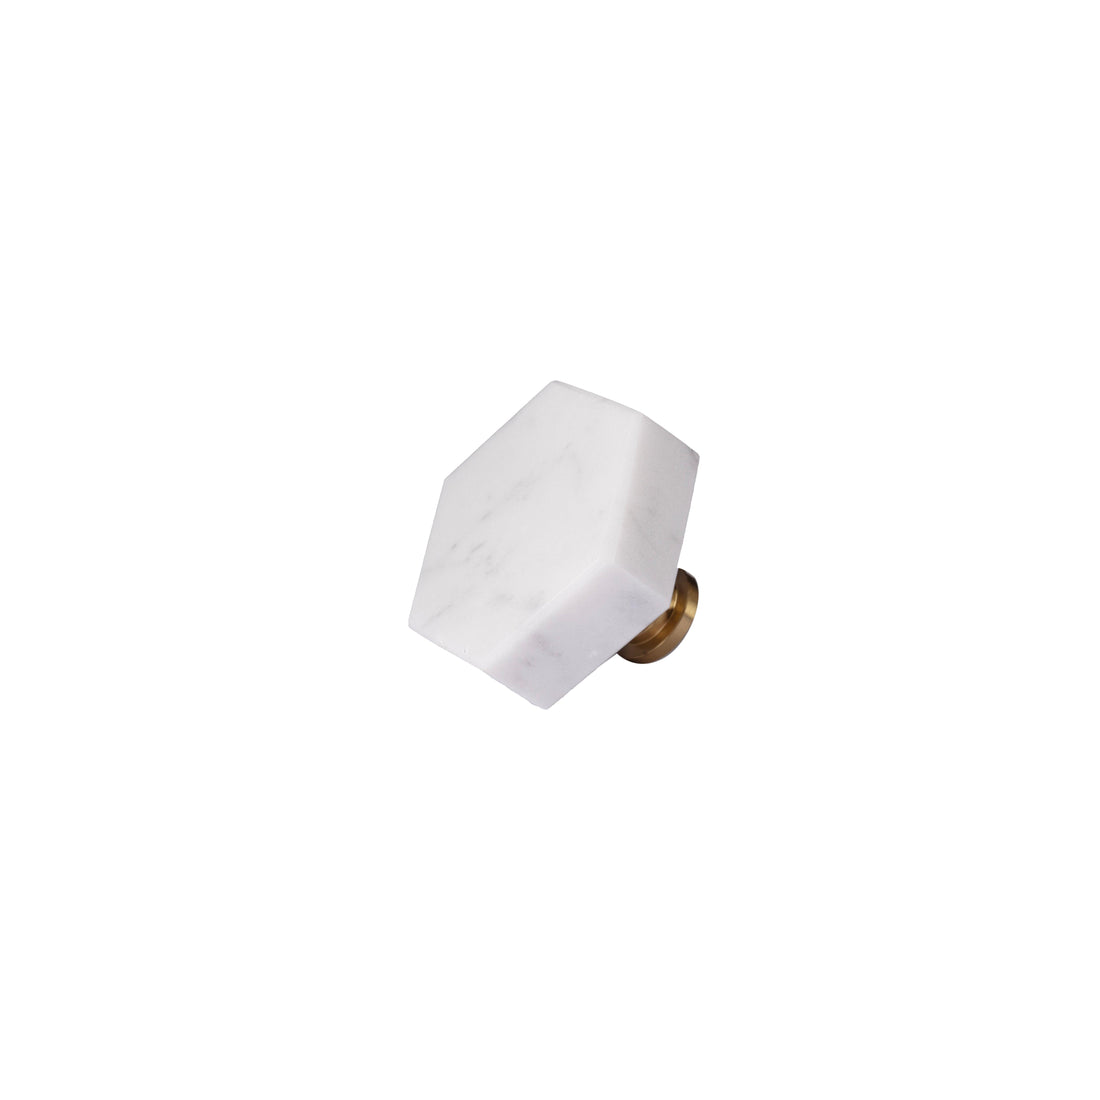 Tetris Knob Knob 43mm / White / Marble - M A N T A R A